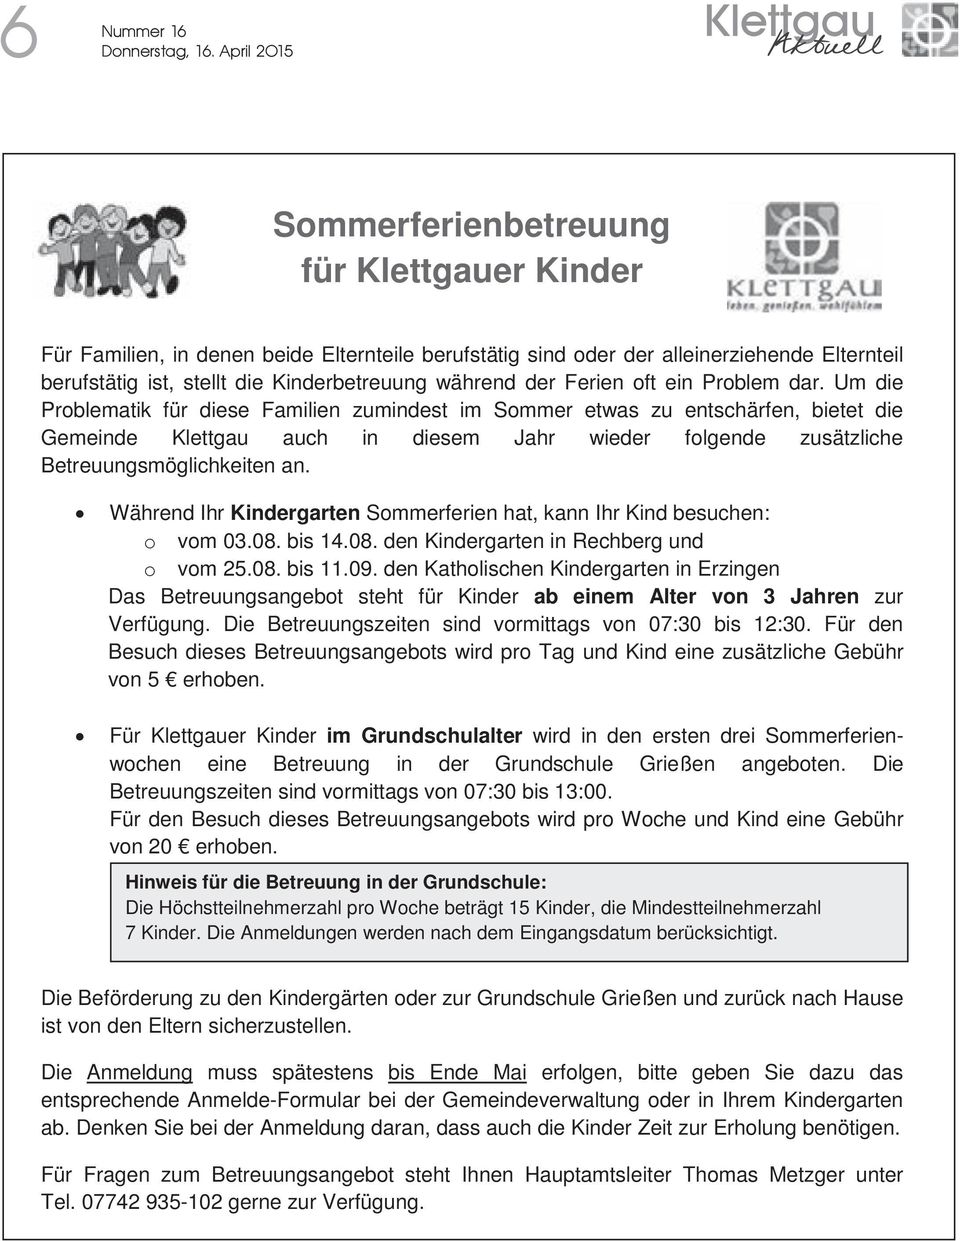 Um die Problematik für diese Familien zumindest im Sommer etwas zu entschärfen, bietet die Gemeinde Klettgau auch in diesem Jahr wieder folgende zusätzliche Betreuungsmöglichkeiten an.